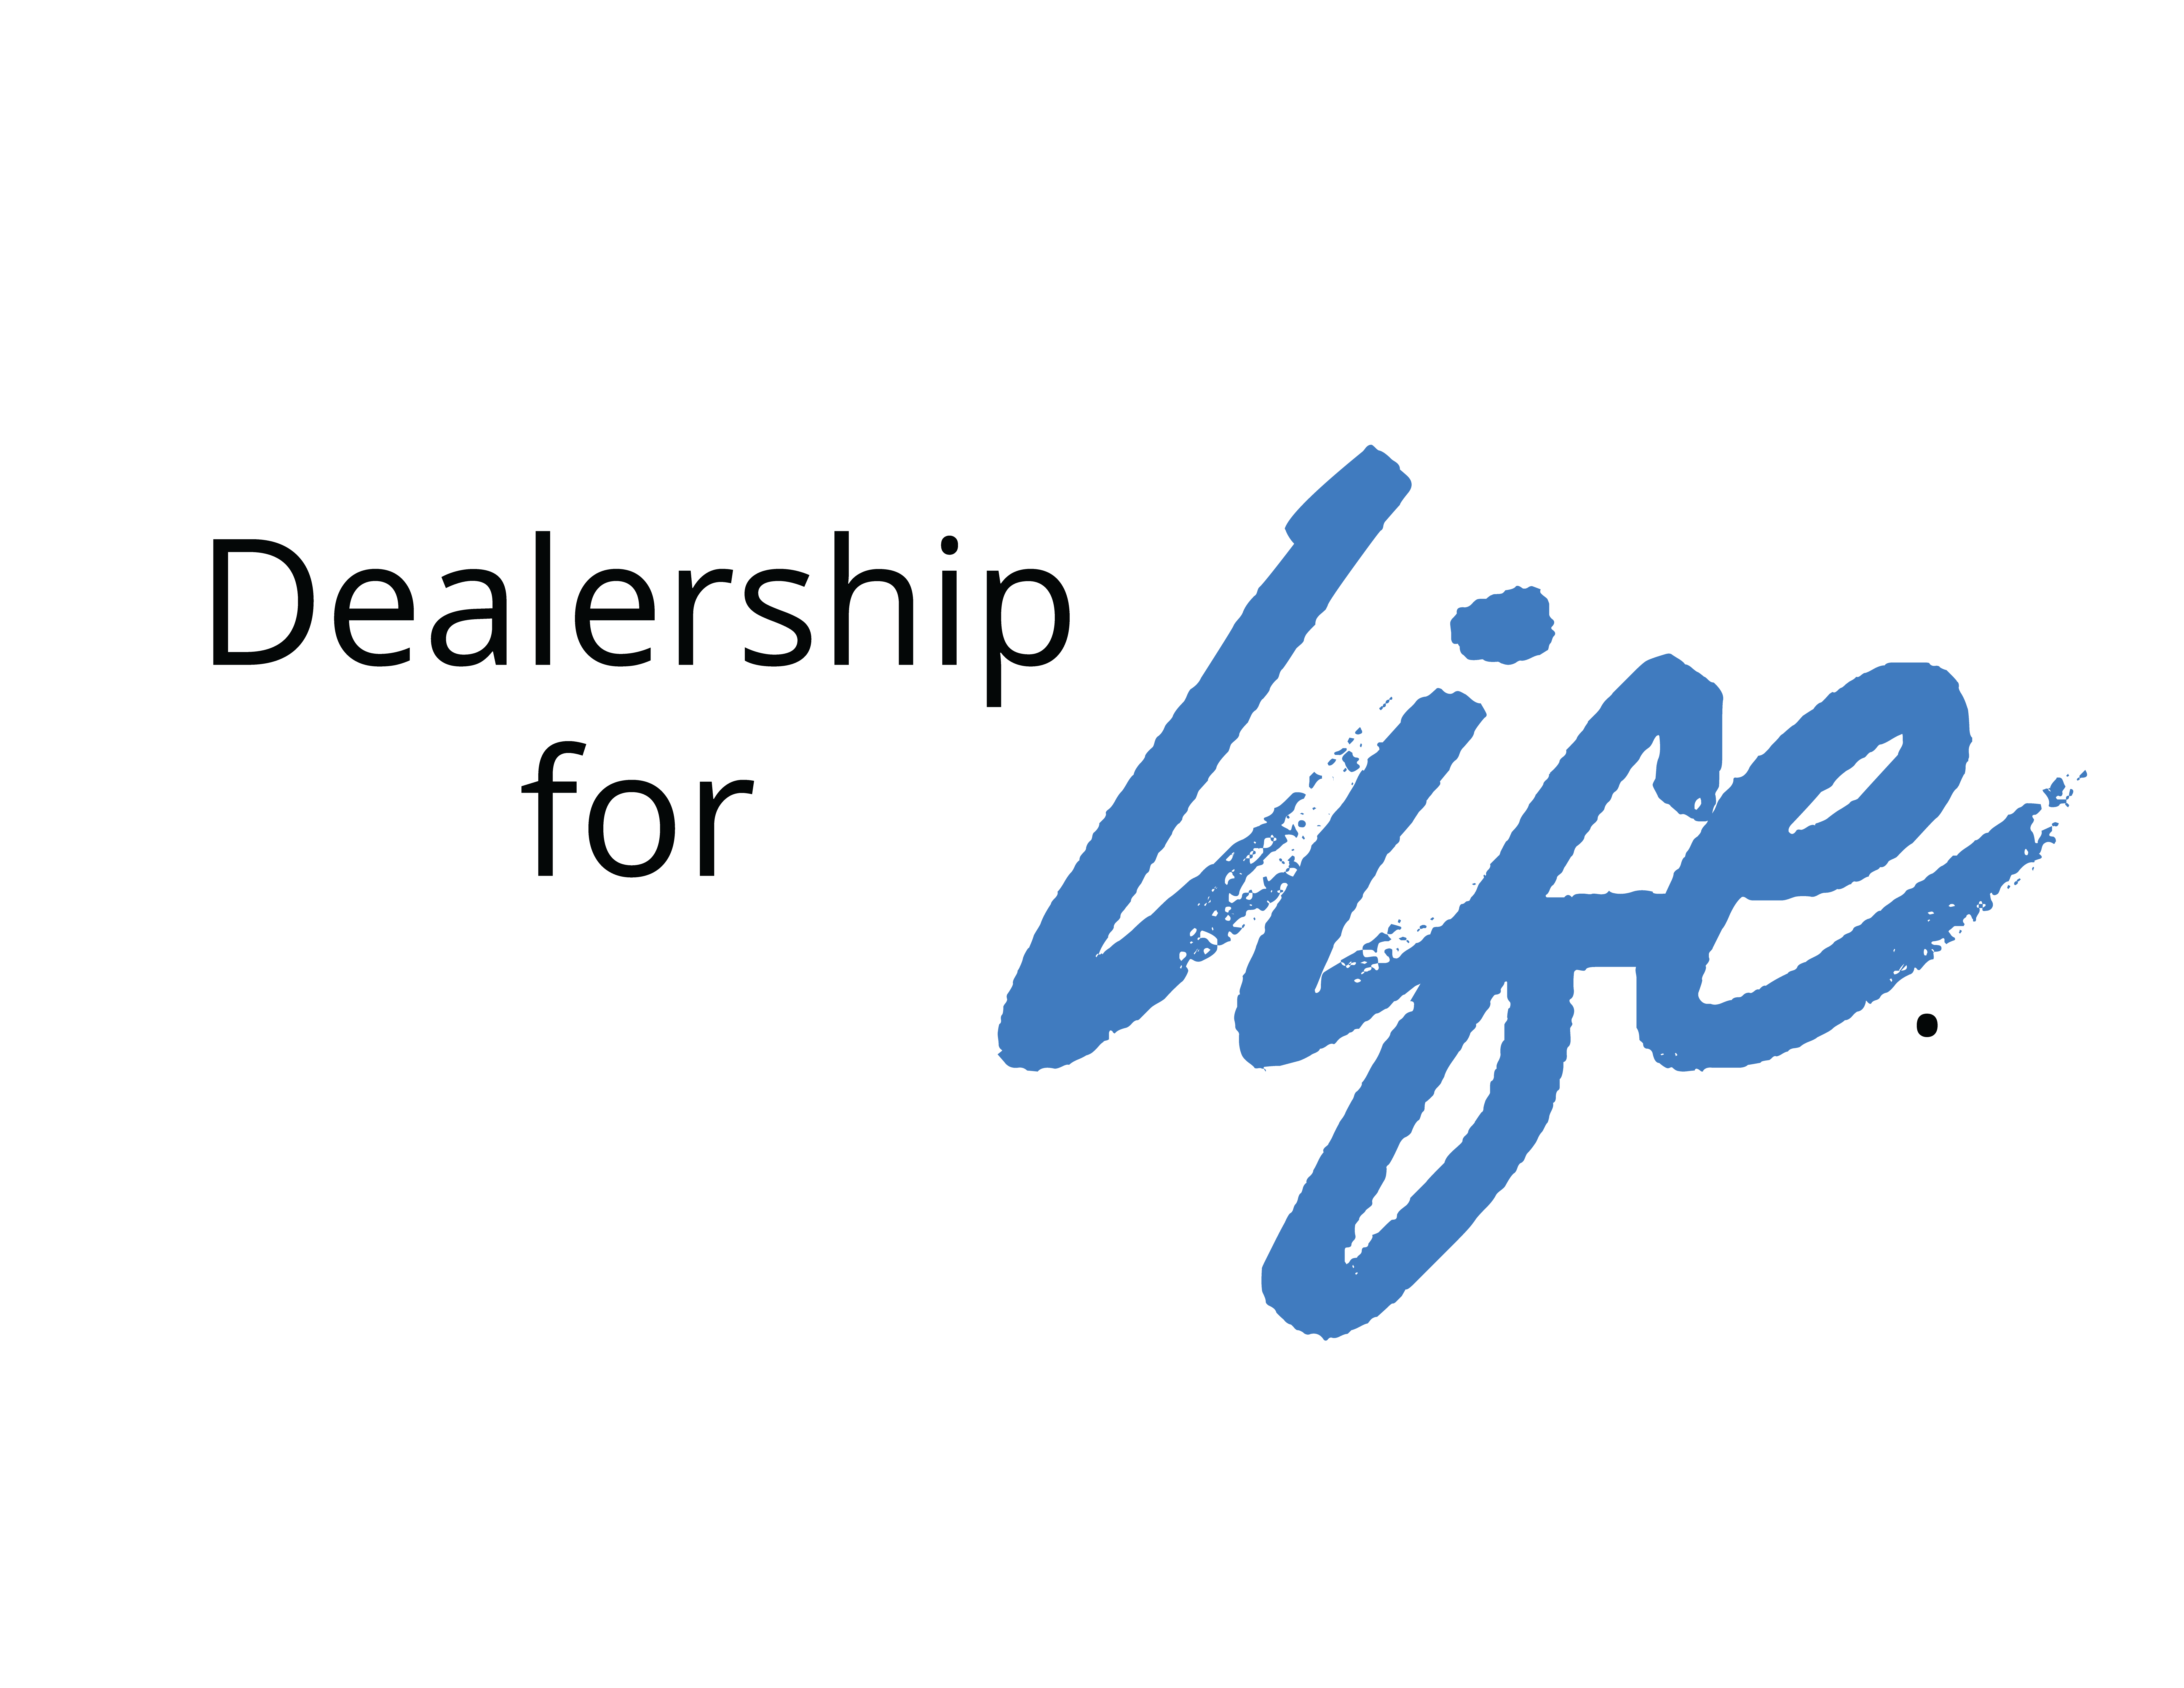 Dealership for Life